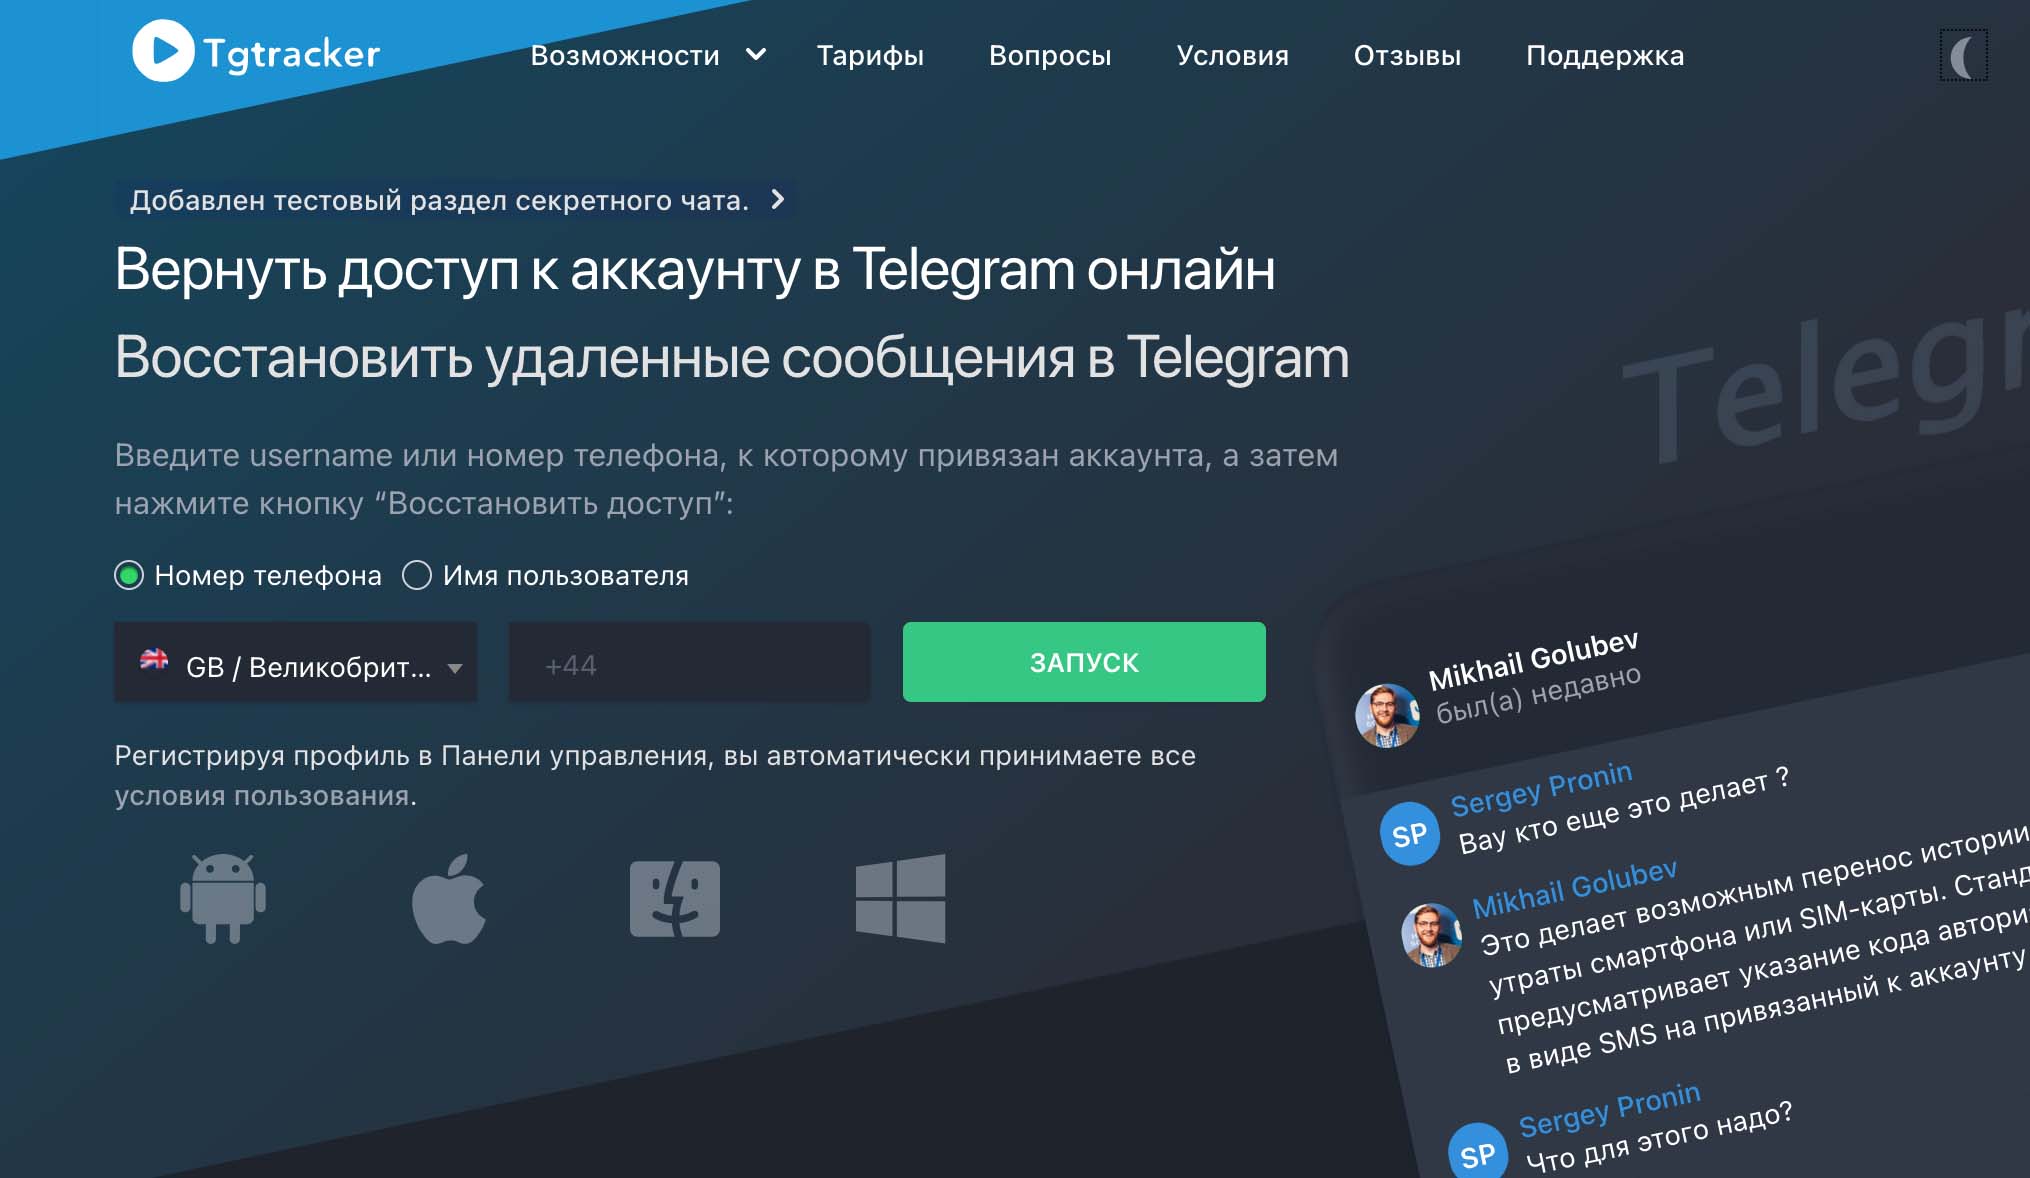 Wie man Tgtracker verwendet, um die Telegram-Aktivitäten der Benutzer zu verfolgen